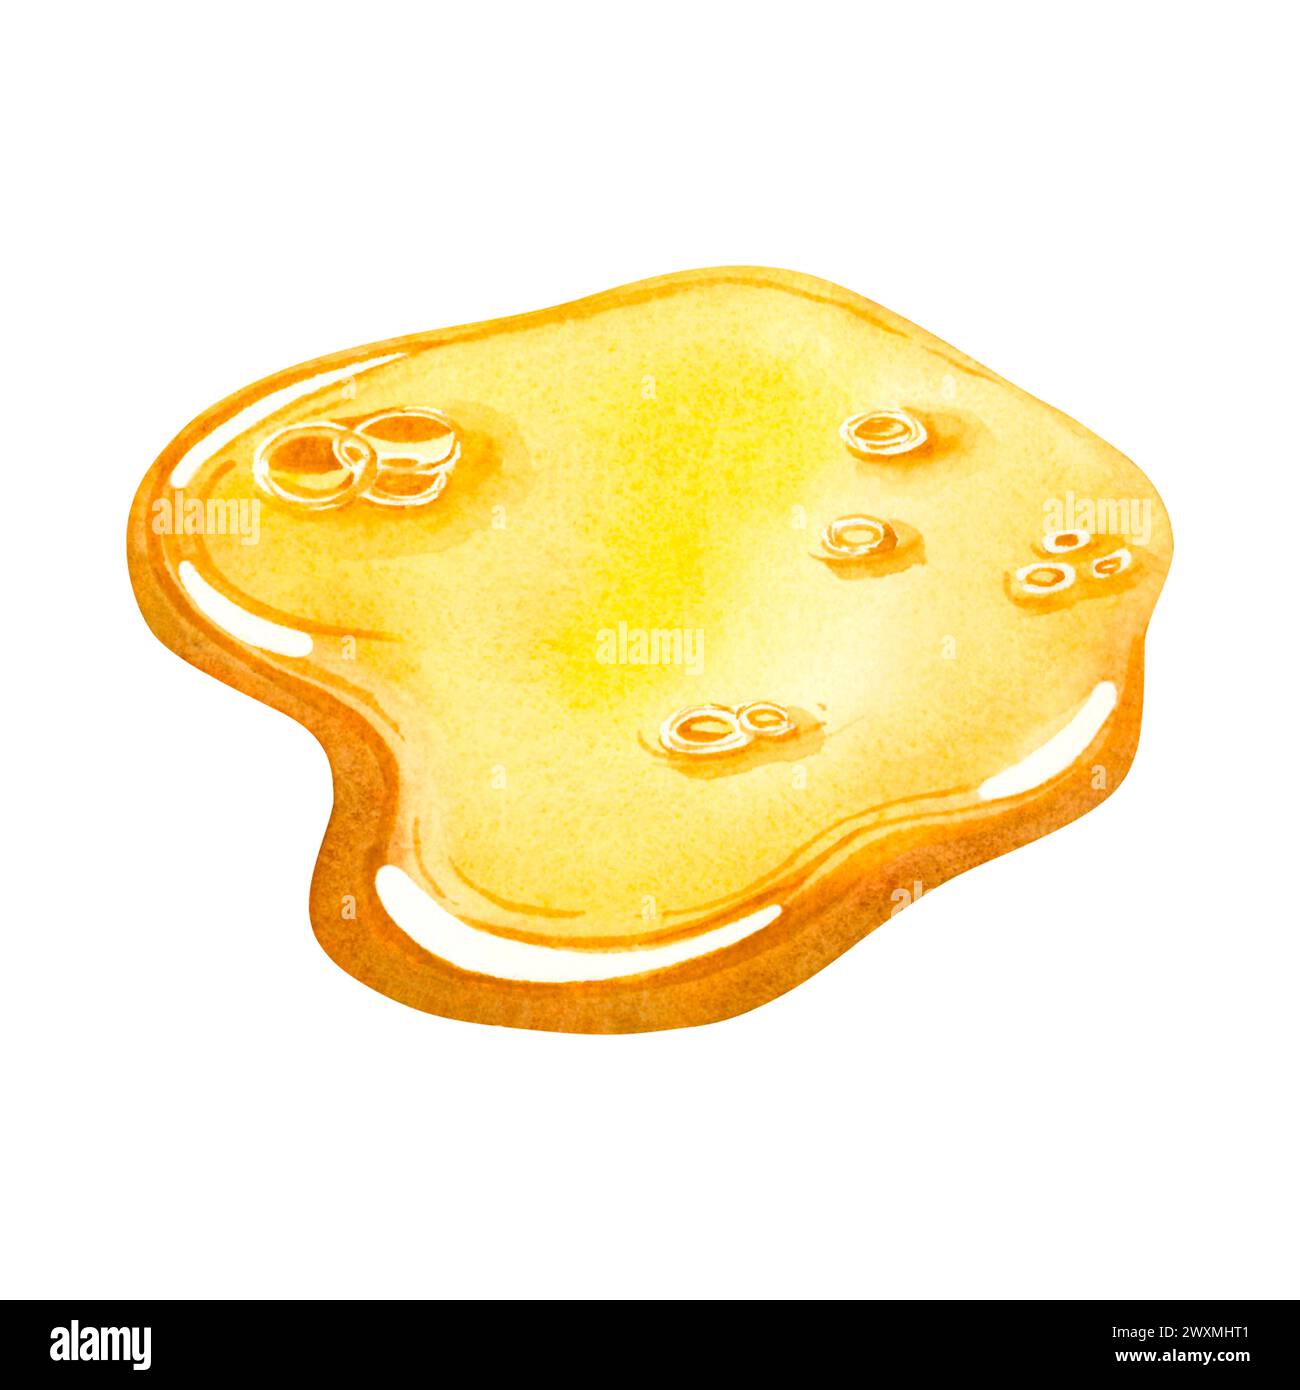 Ein goldener Tropfen Öl, der sich über die Oberfläche verteilt. Handgezeichnete Aquarellillustration einer auf dem Hintergrund isolierten Ölessenz. Schönheitsbehandlungen. Stockfoto